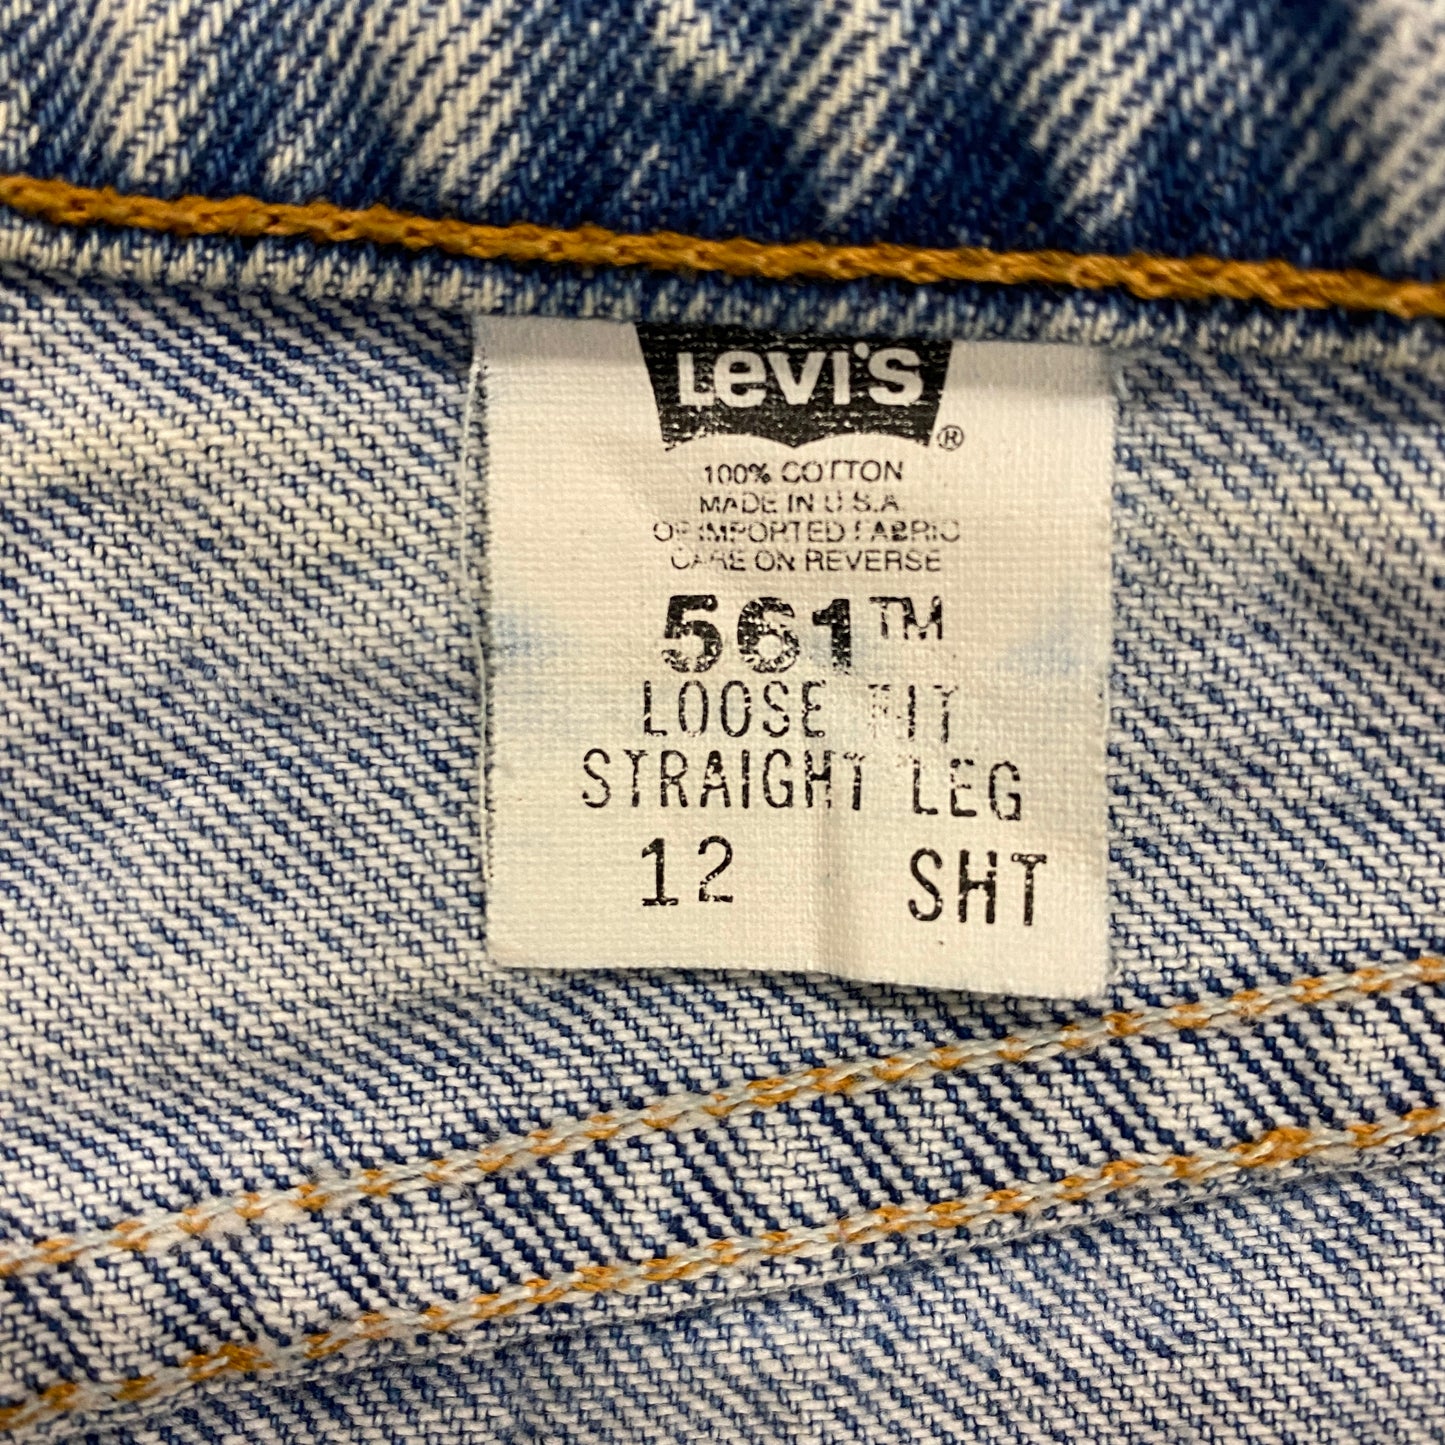 1990s Levi's 561 Light Wash Jeans - 32"x28"